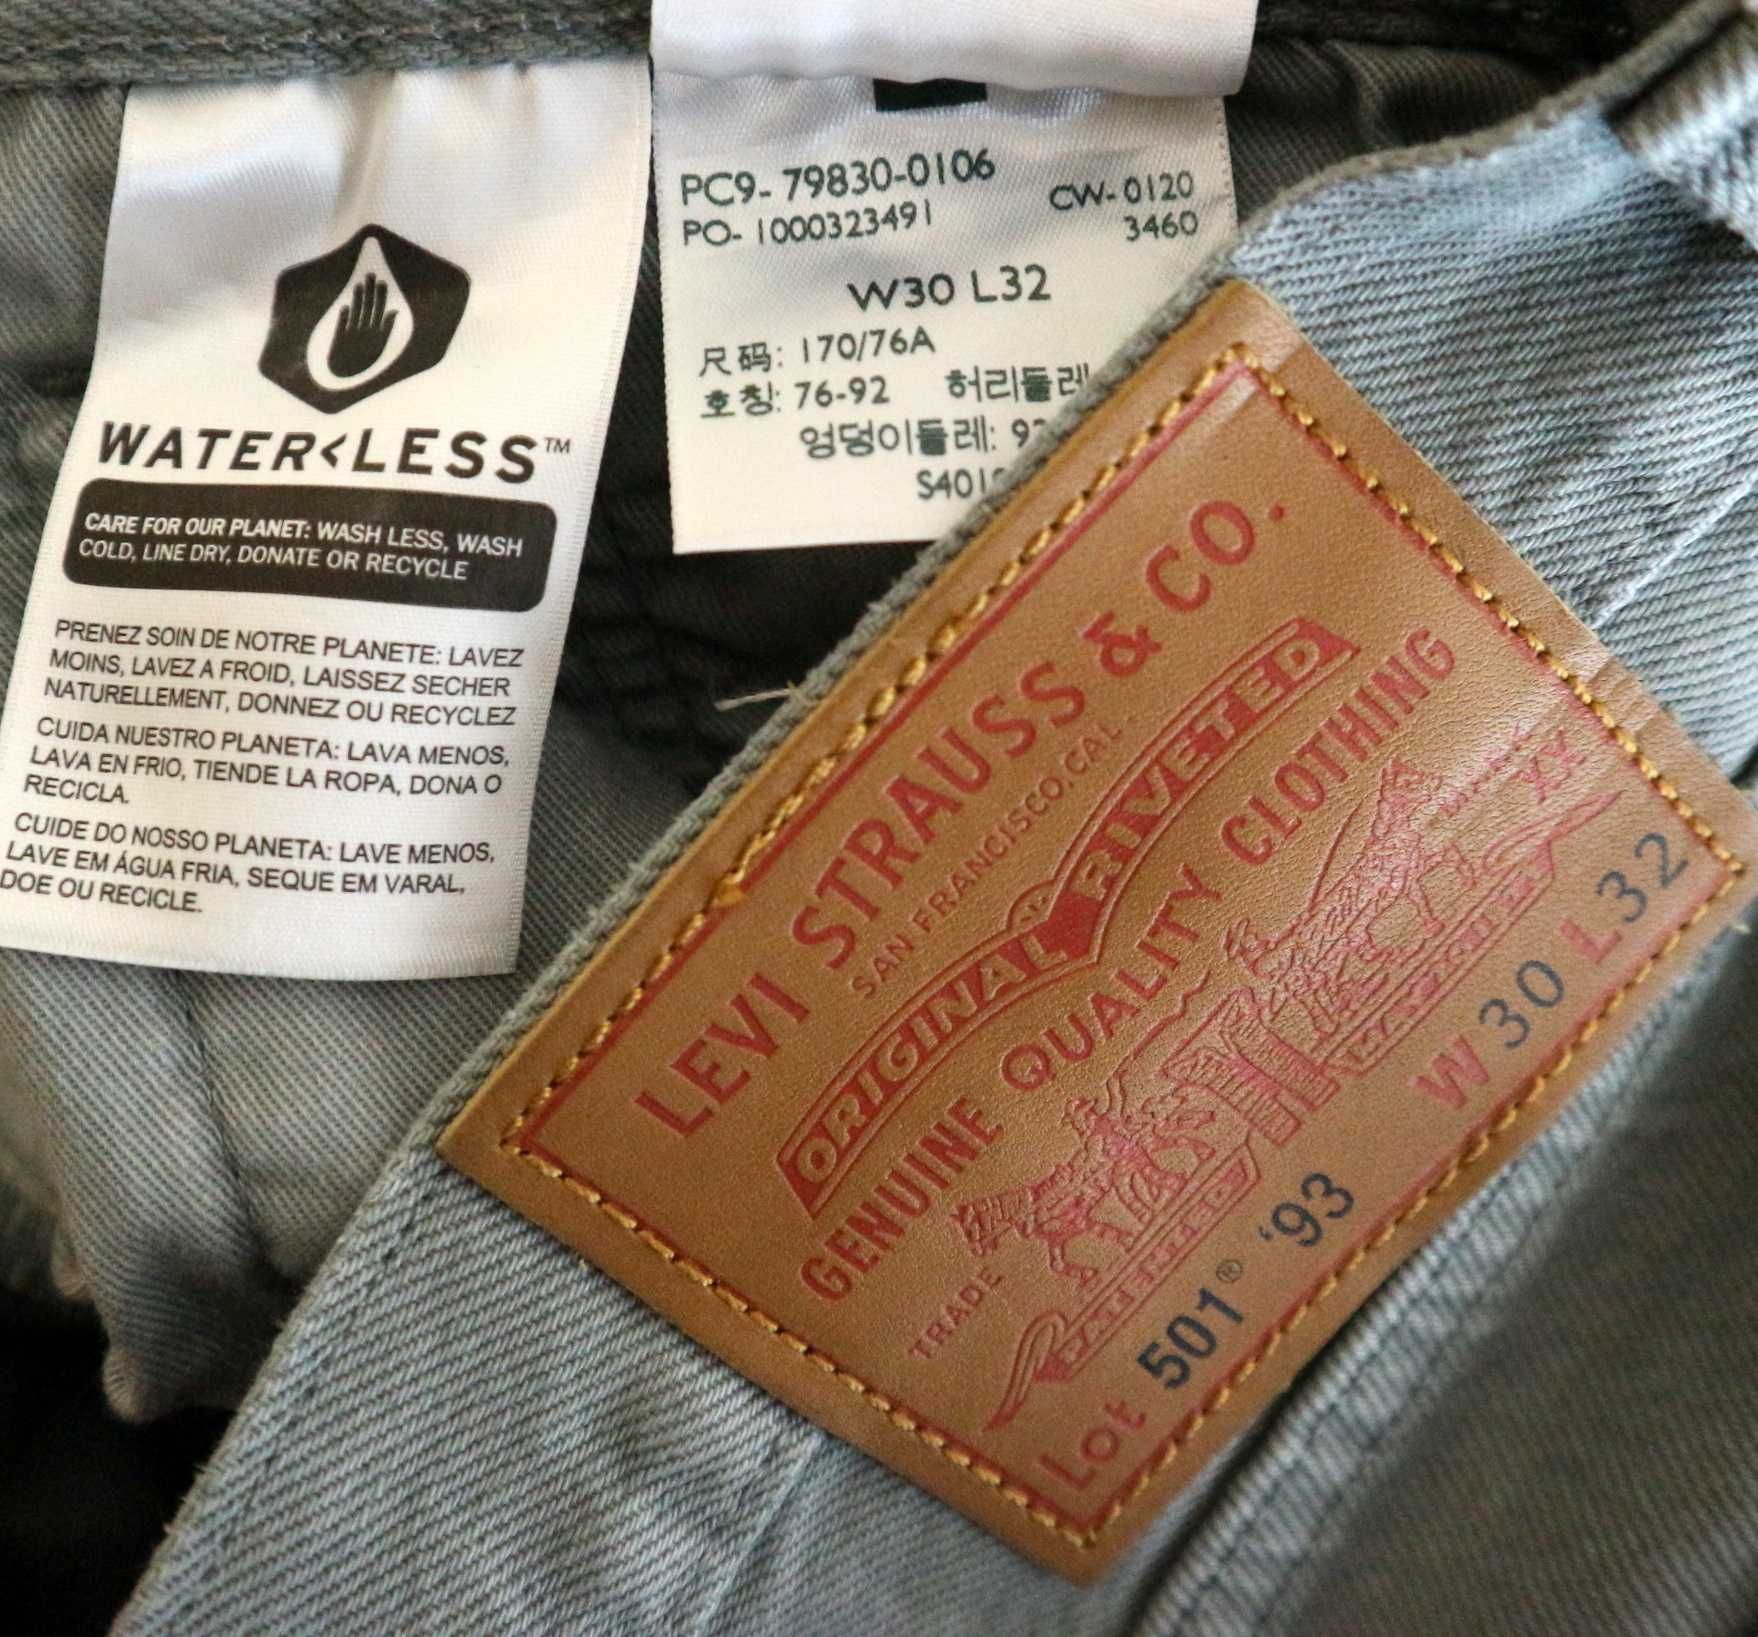 Levis 501 '93 spodnie jeansy W30 L32 pas 2 x 41 cm